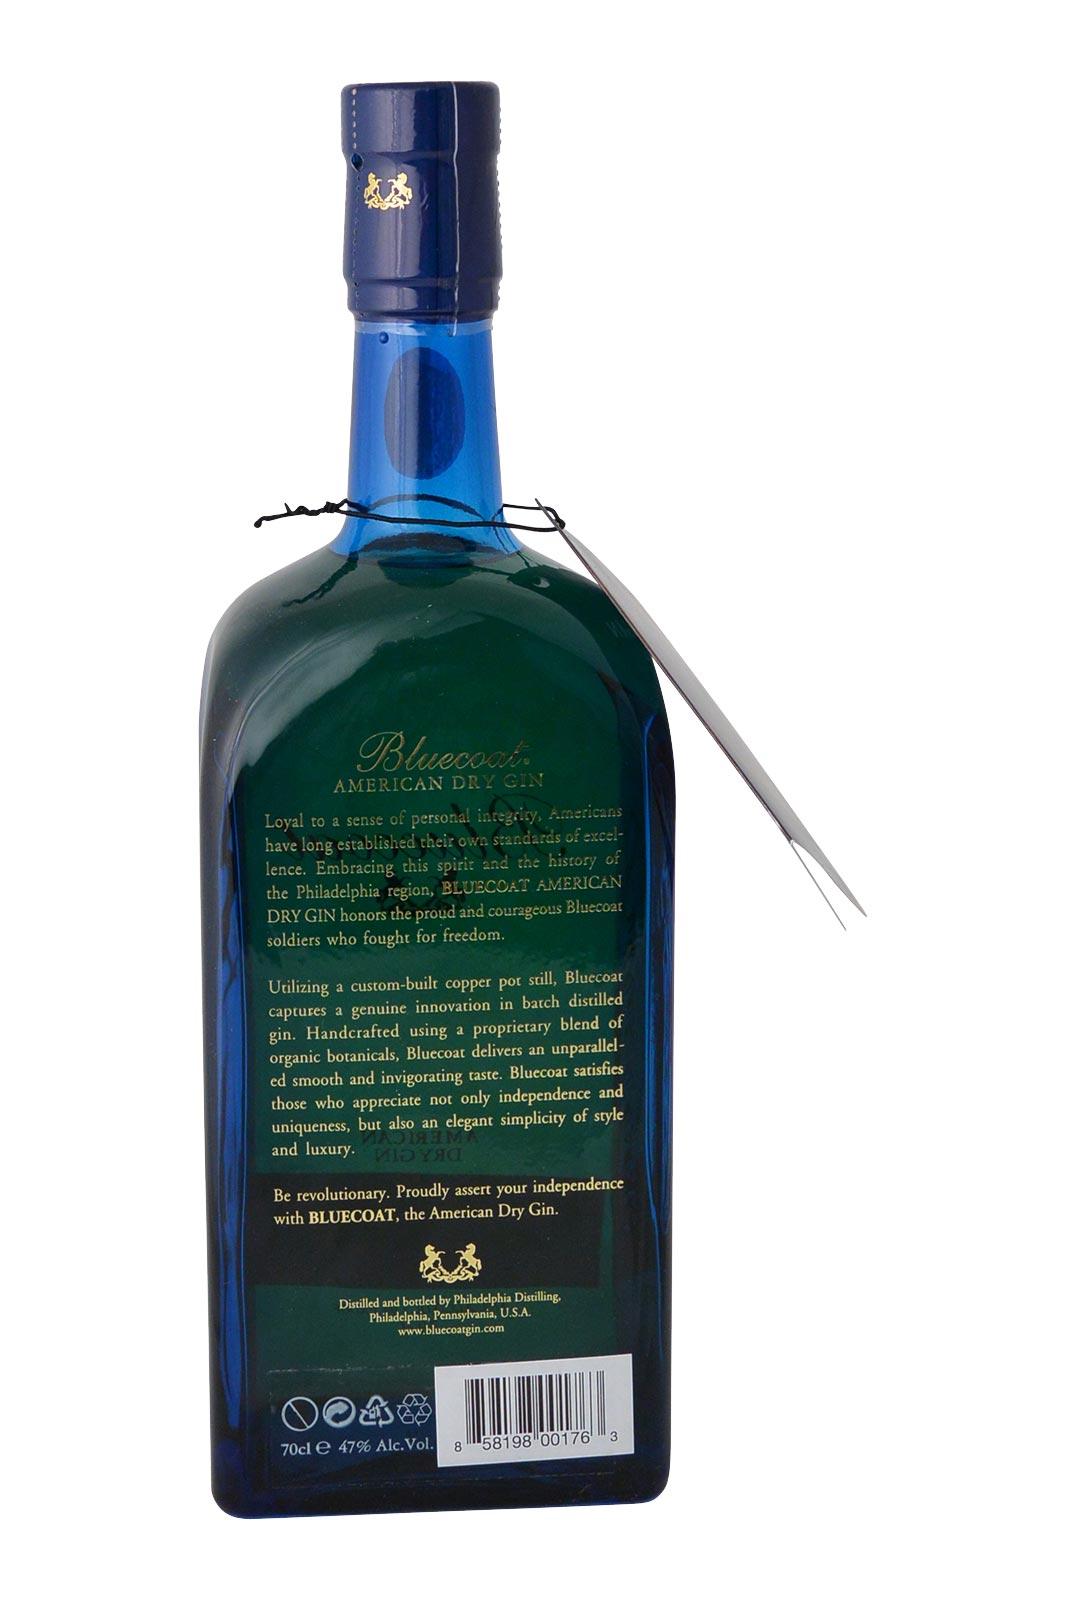 Bluecoat American Dry Gin – Bluecoat Bottle Shop by Philadelphia Distilling